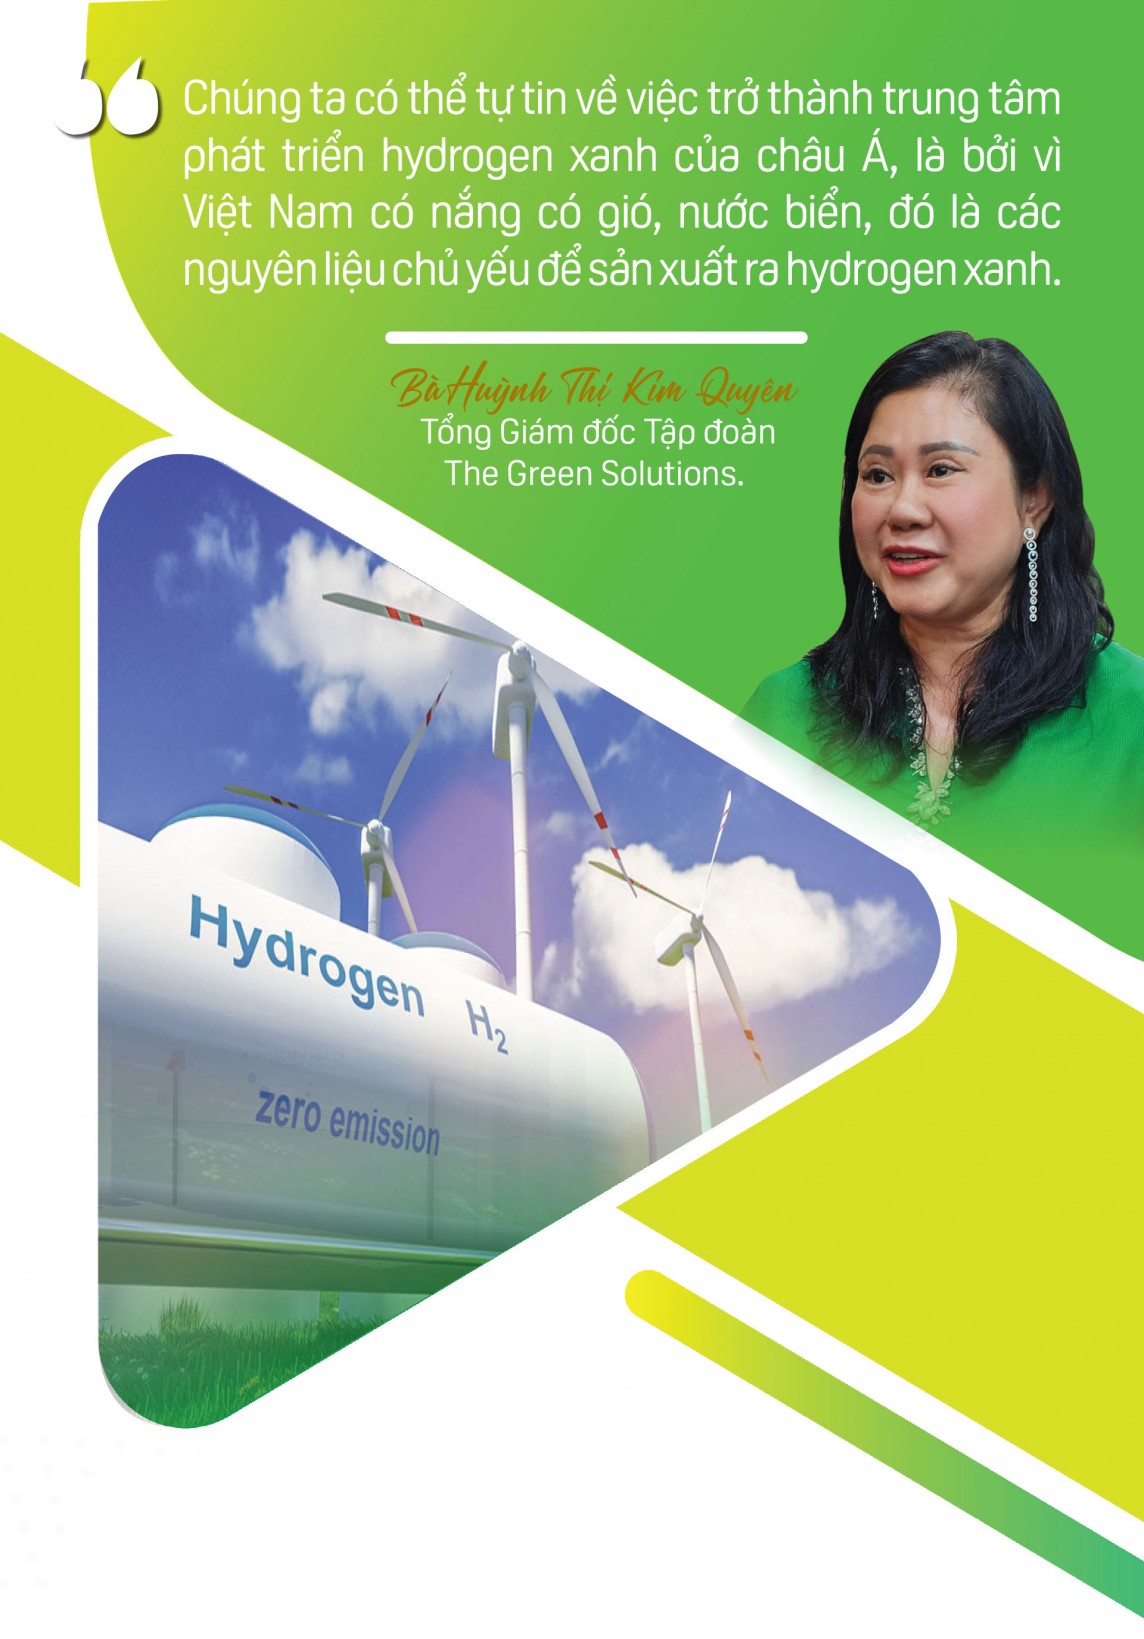 CEO The Green Solution: Việt Nam có thể là trung tâm sản xuất hydrogen xanh ở châu Á